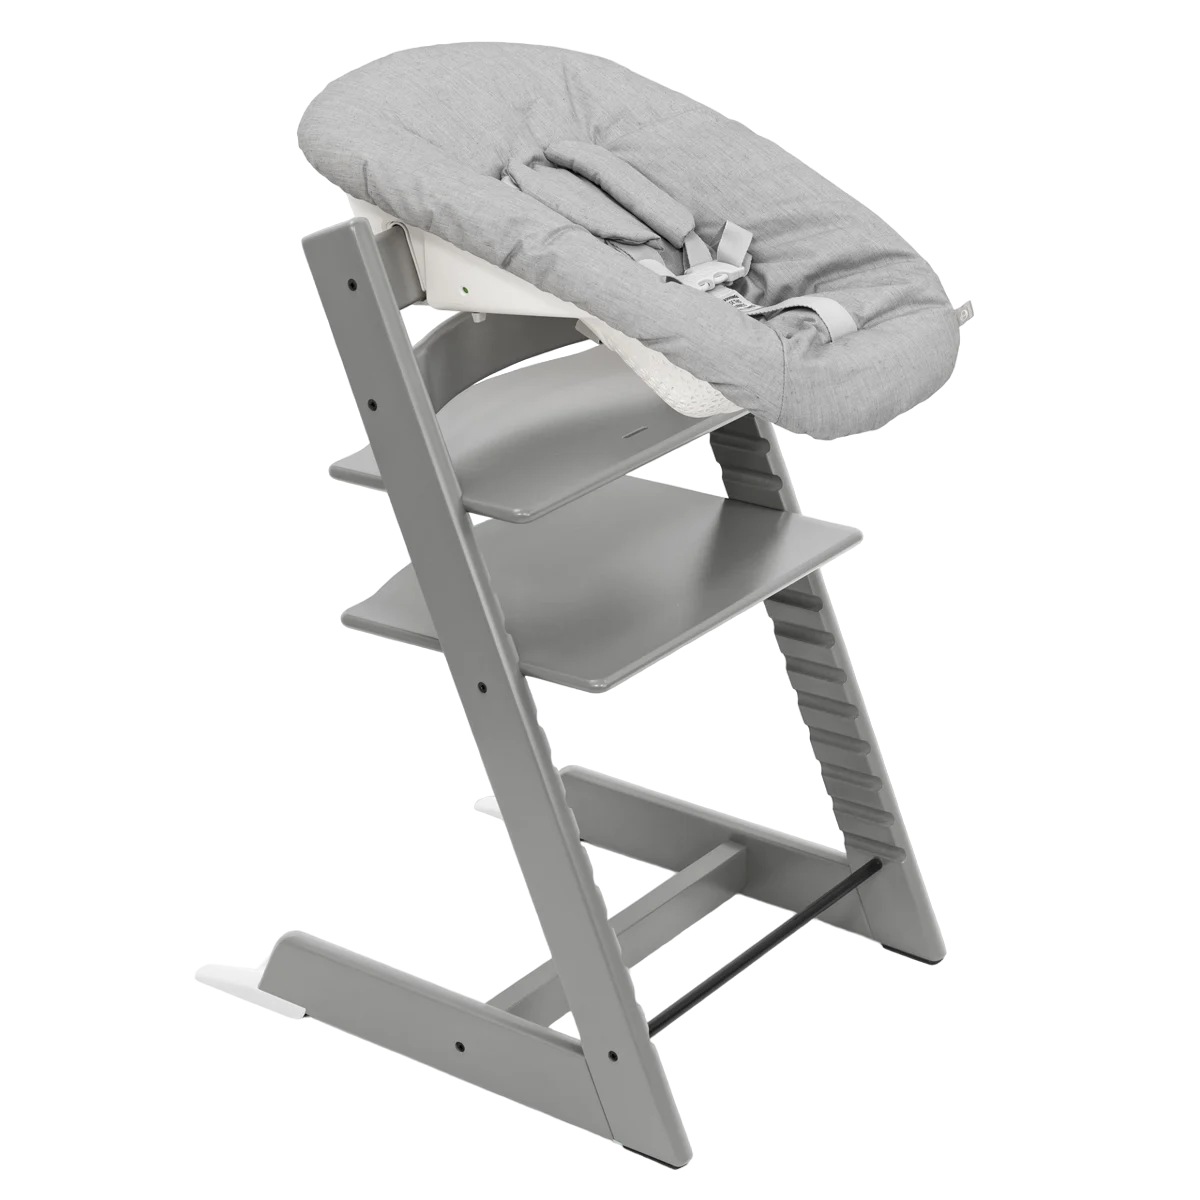 Набор Stokke Newborn Tripp Trapp Storm Grey: стульчик и кресло для новорожденных (k.100125.52) - фото 1